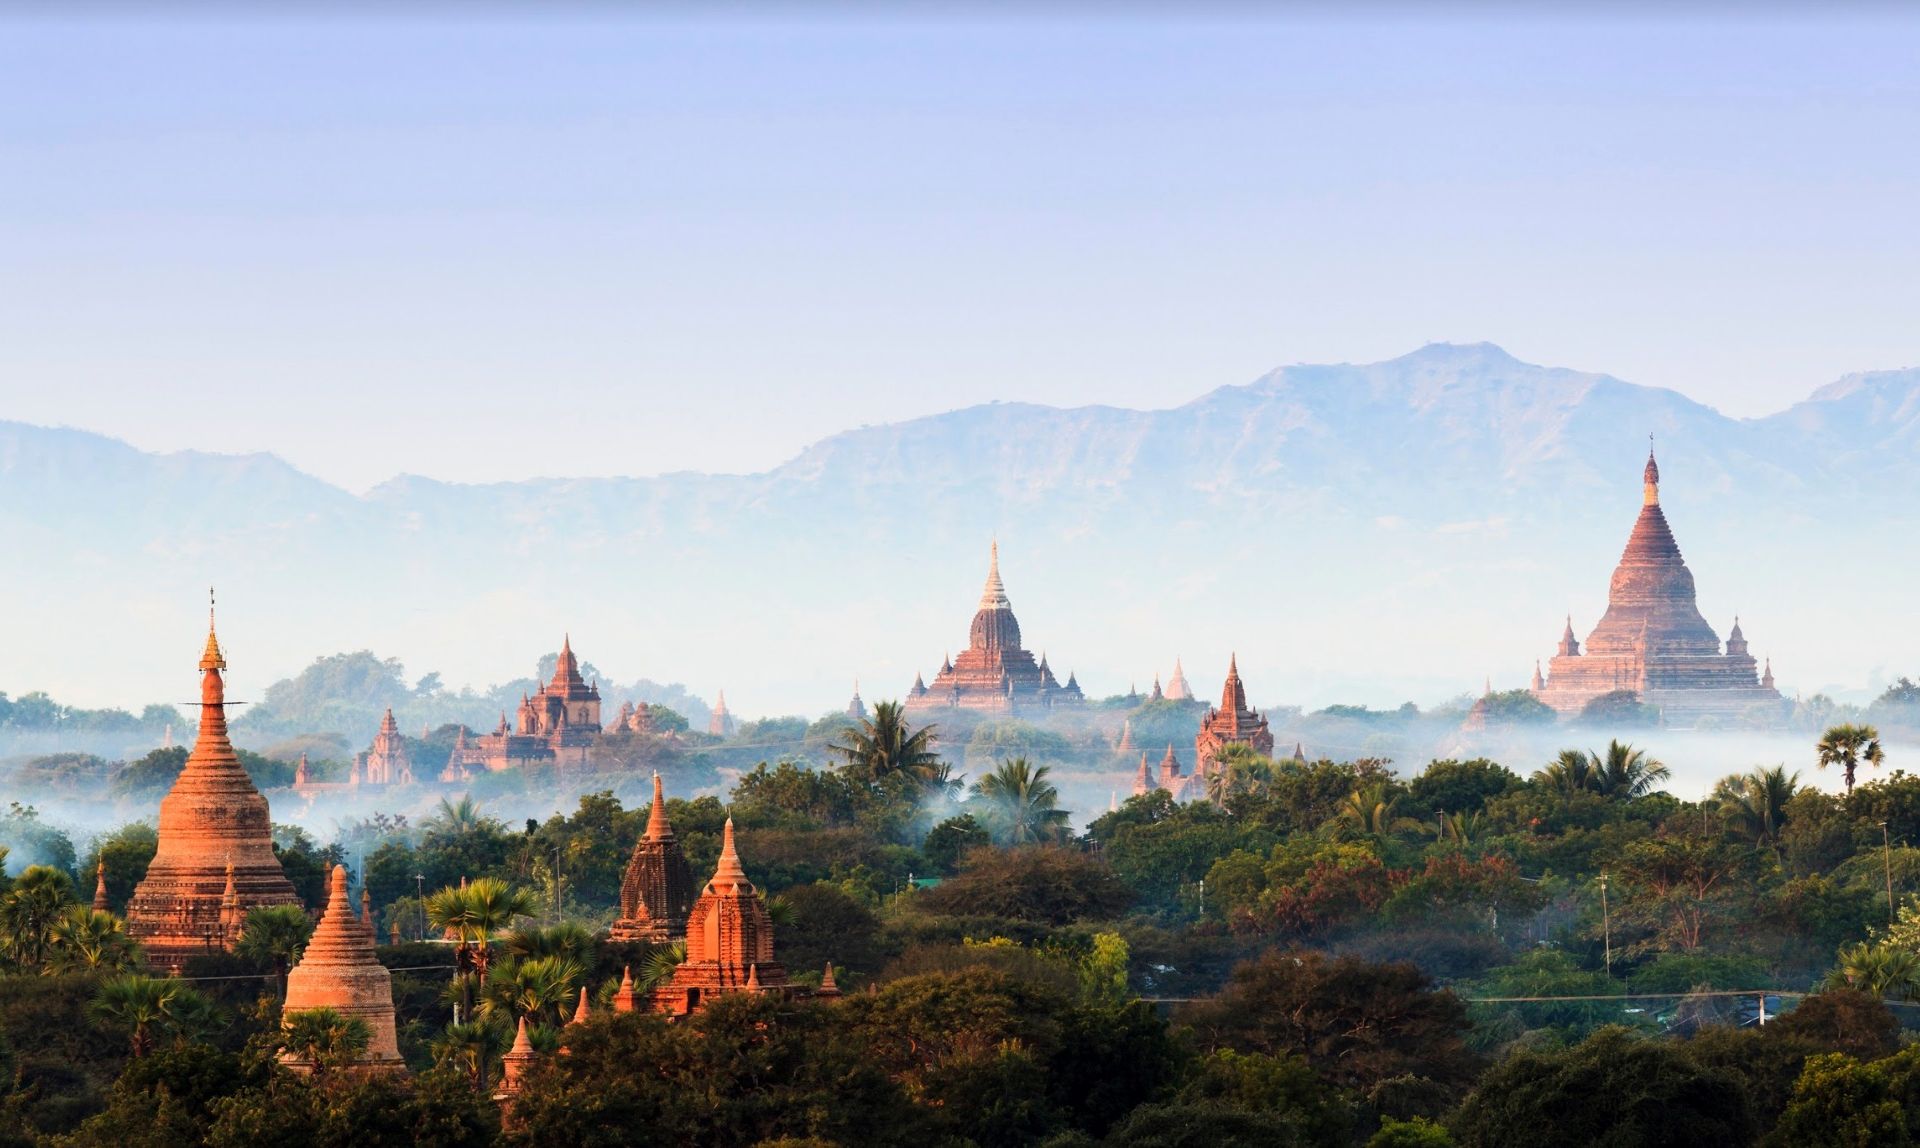 Lever du soleil sur les temples, Bagan - Birmanie ©Istock